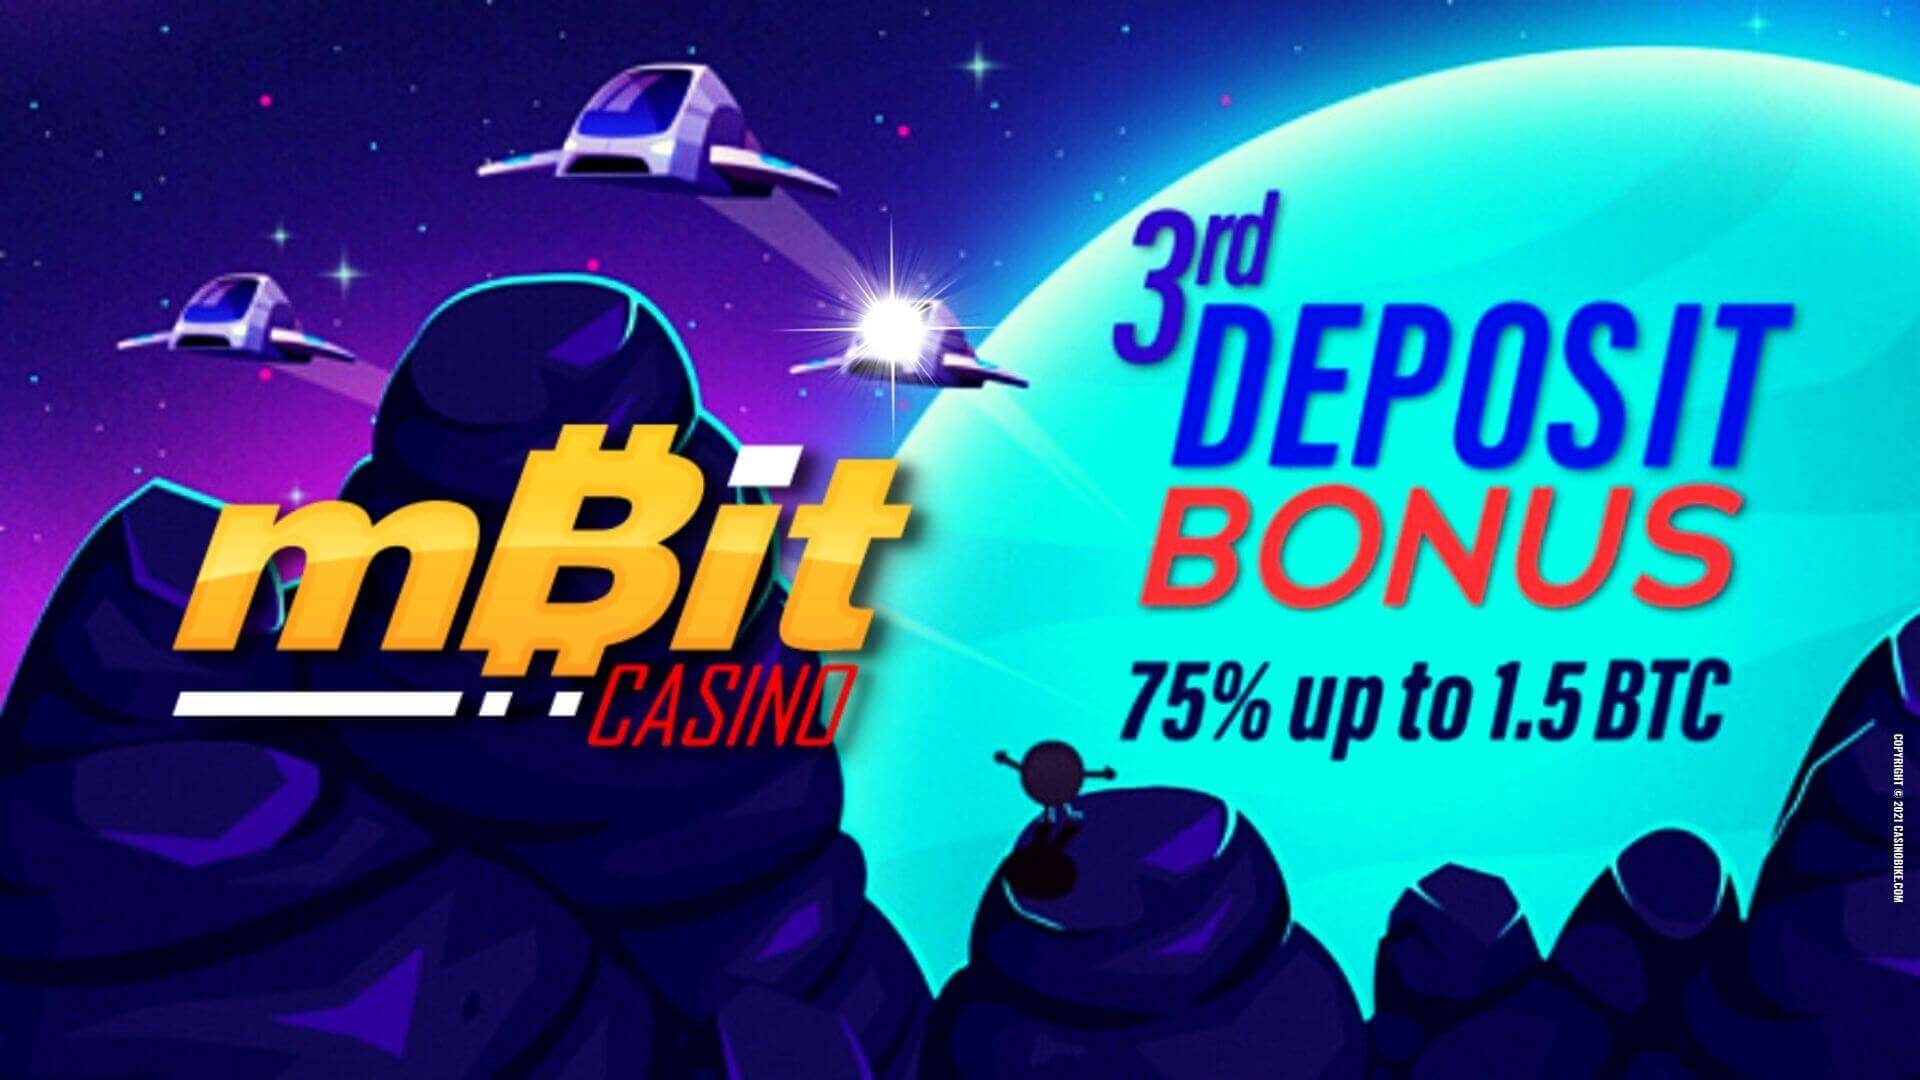 Exclusive 75% up to 1.5 BTC Third Deposit Bonus at mBit Casino